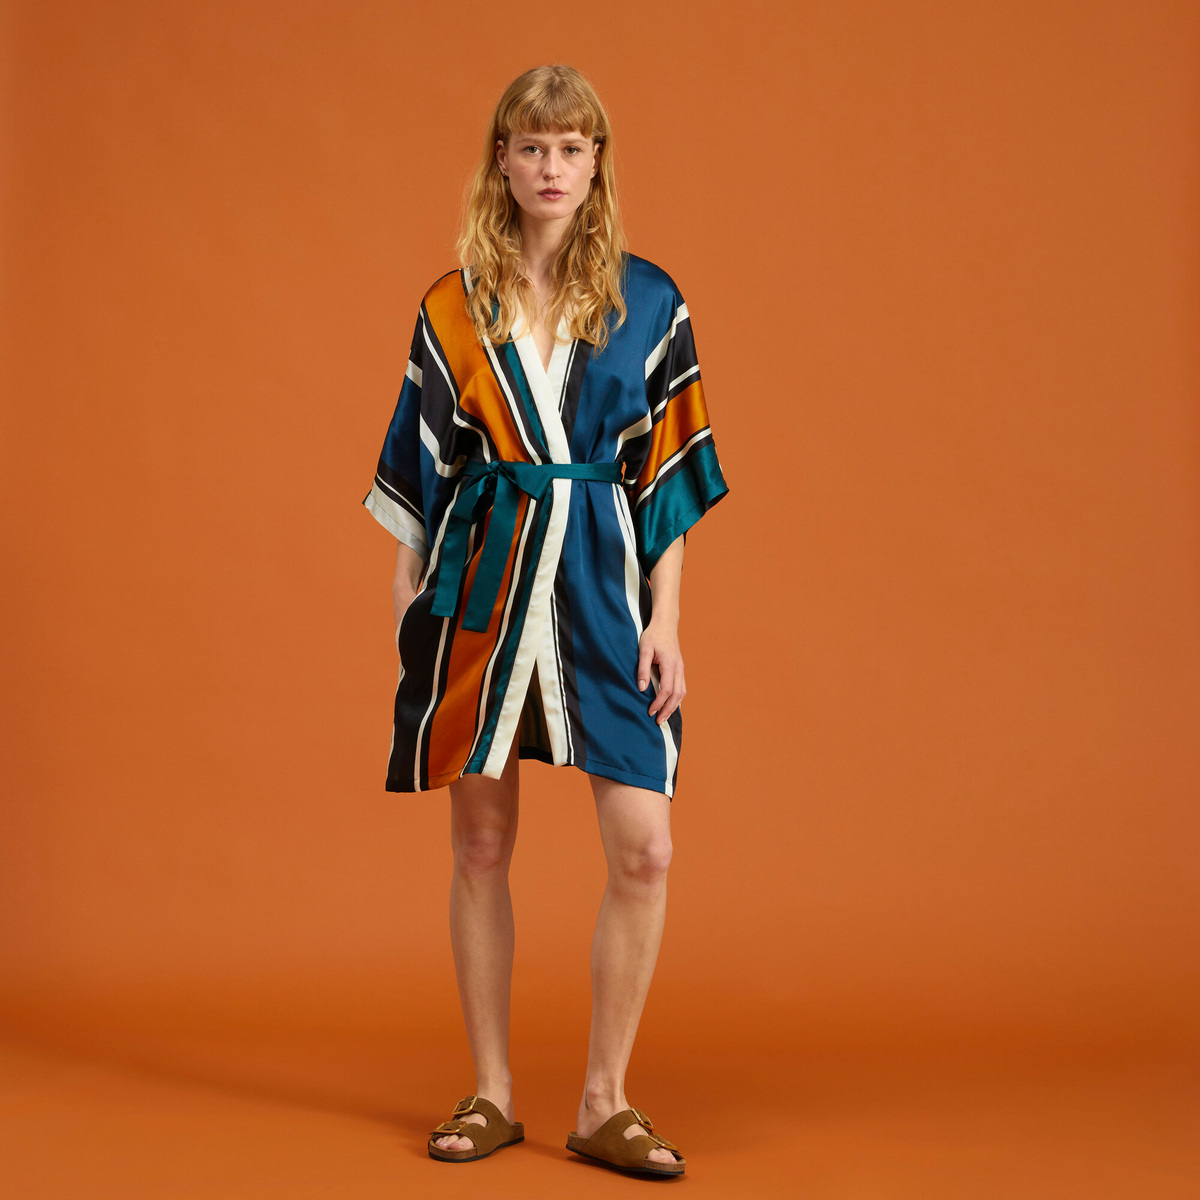 Prisca Kimono, Iconic Stripe - 100% Silk - image 1